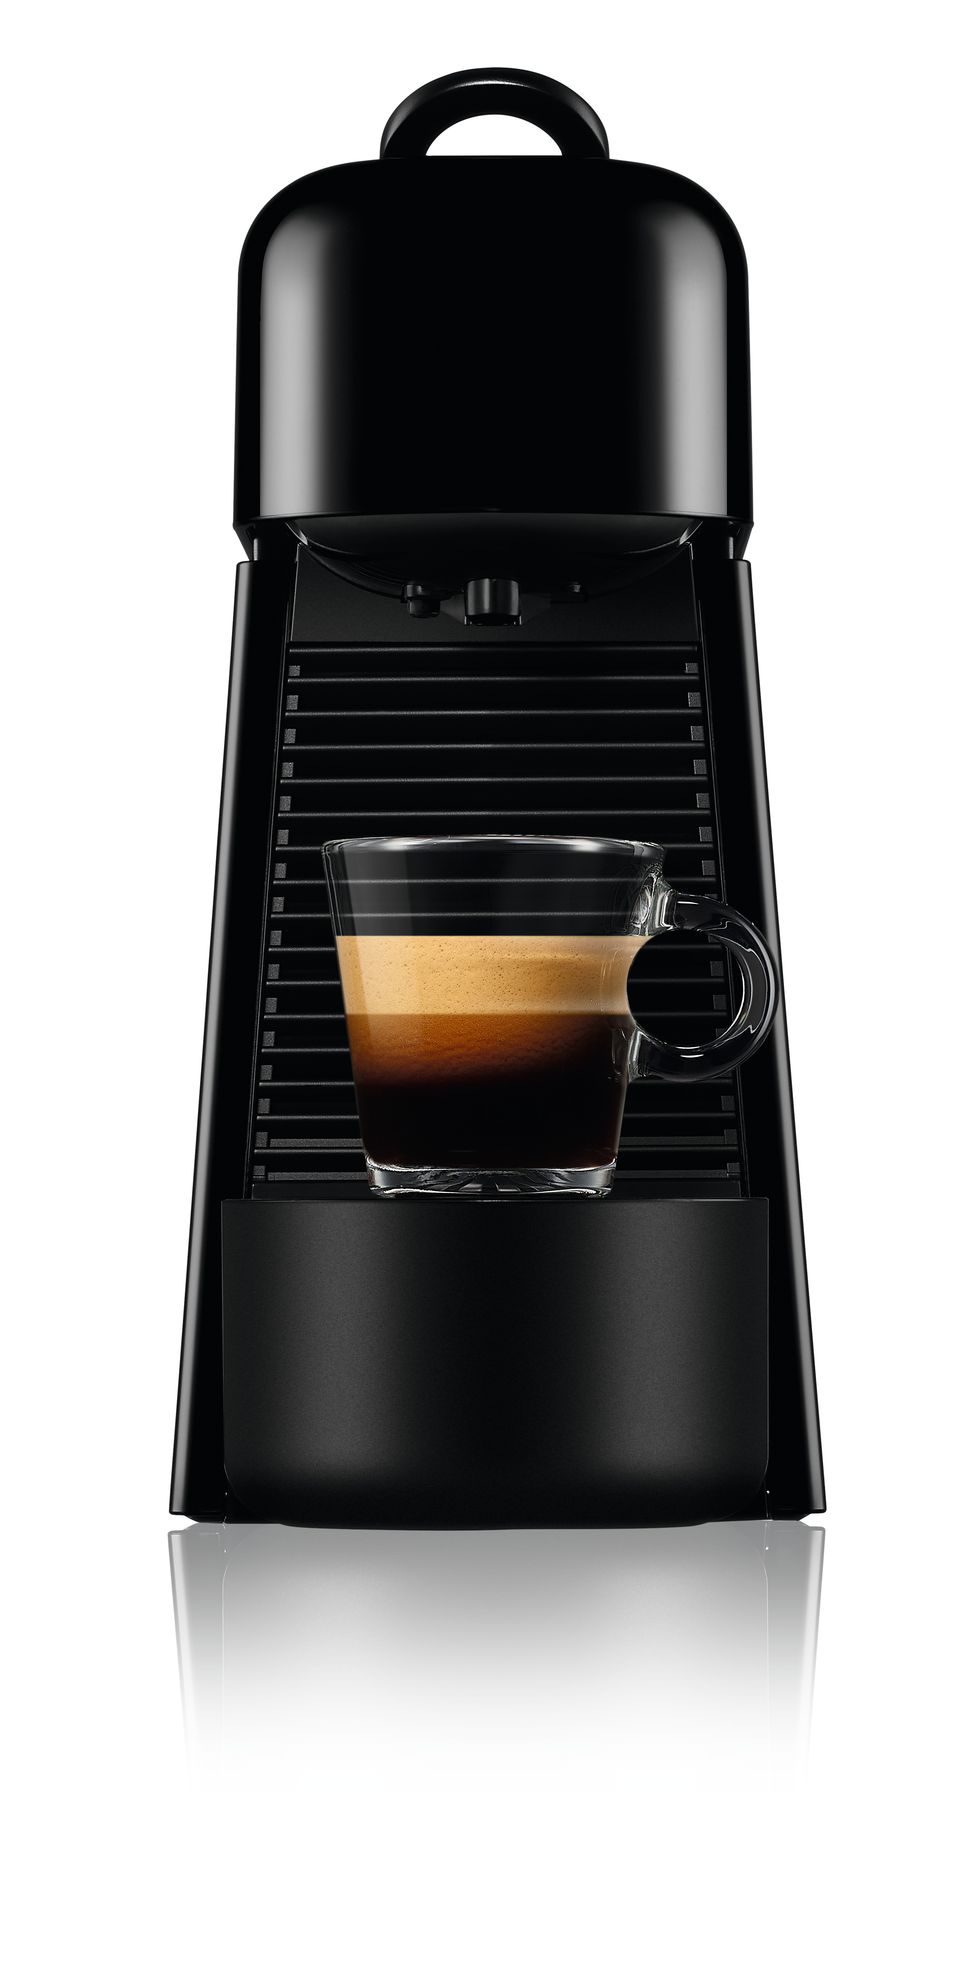 Espresso machine, Home appliance, Small appliance, Drink, Kitchen appliance, Coffeemaker, Lungo, Ristretto, Espresso, 